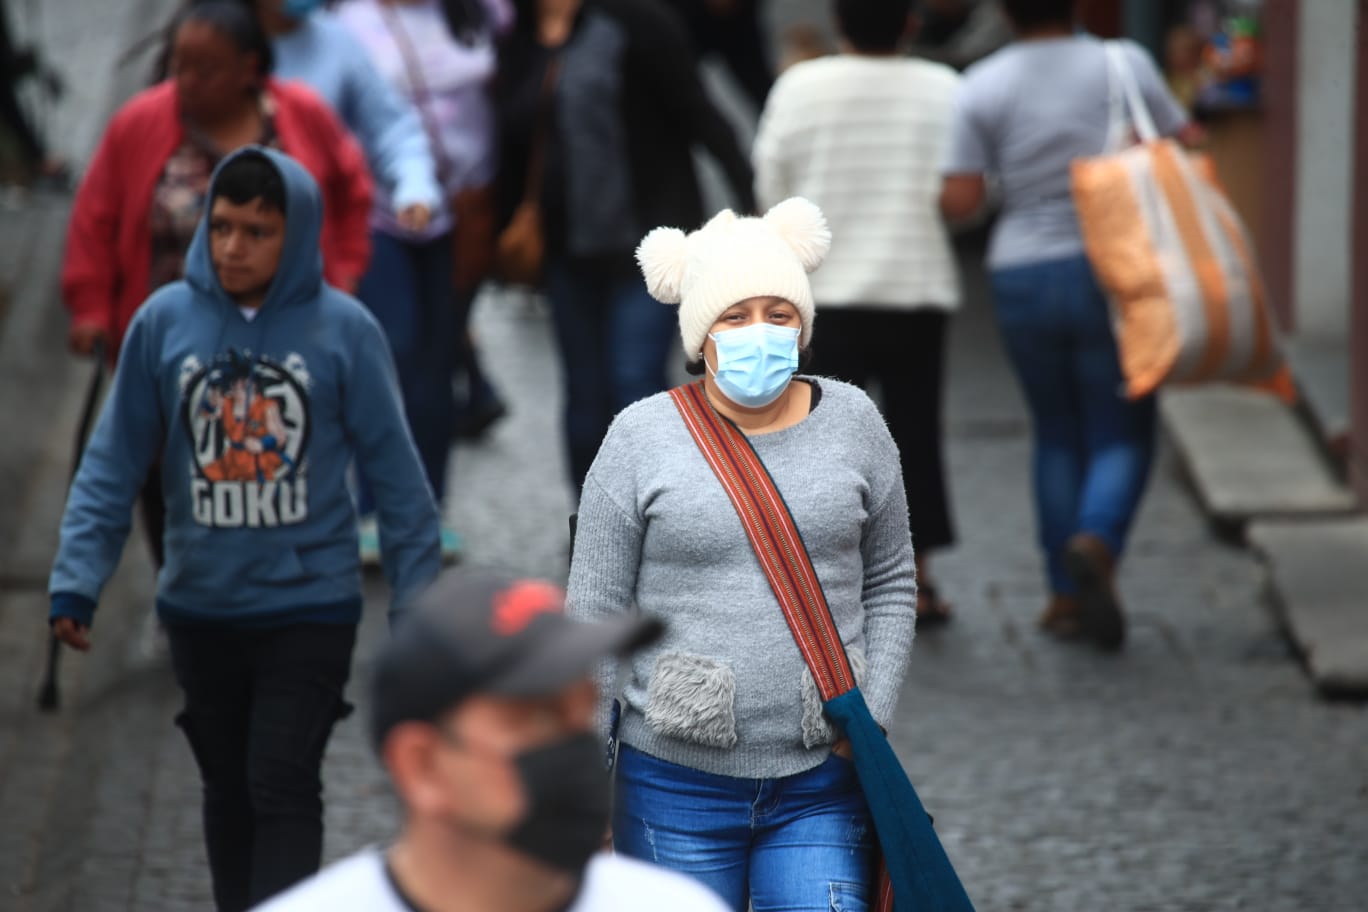 Los guatemaltecos experimentarán más frío en las próximas horas, según pronósticos del Insivumeh. (Foto Prensa Libre: Carlos Hernández Ovalle)